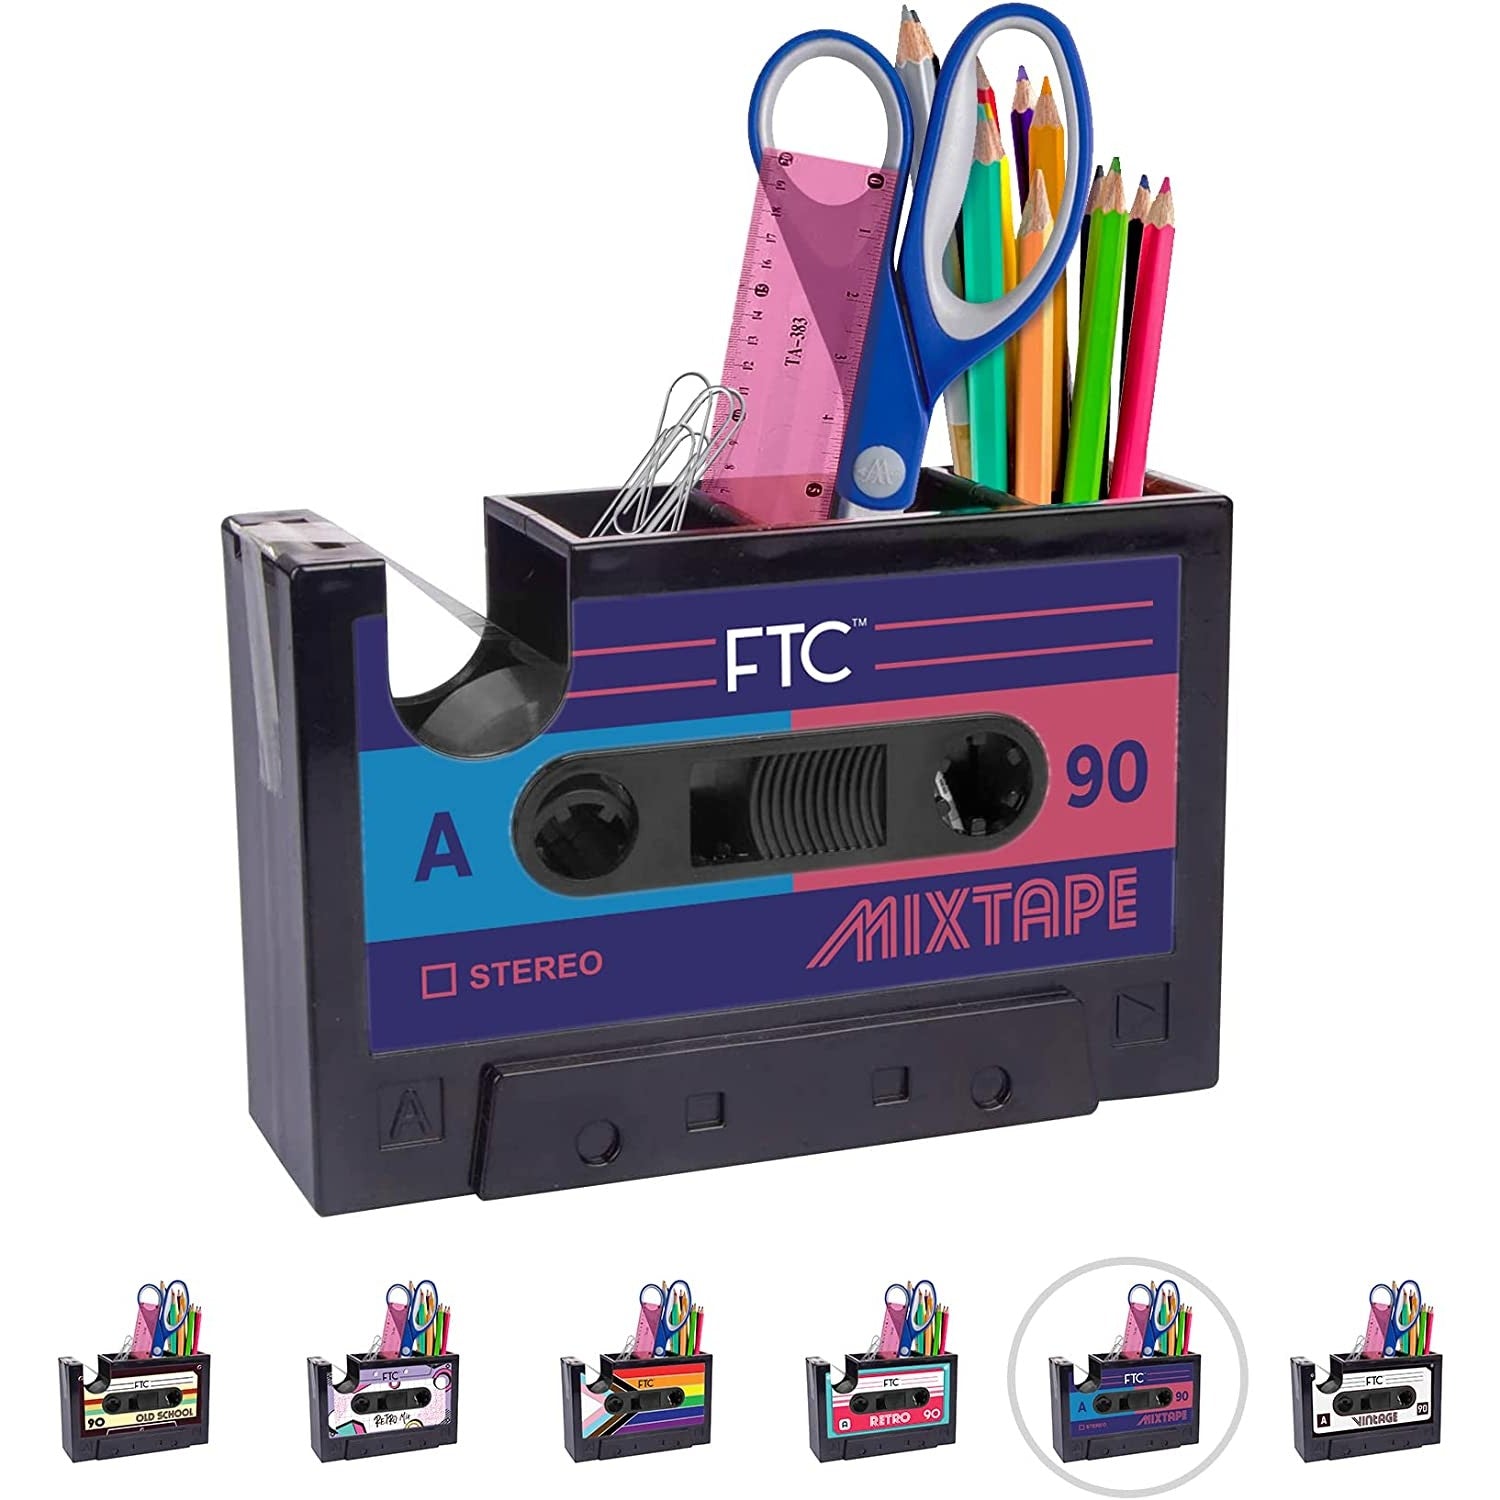 A retro cassette tape dispenser and stationary holder.